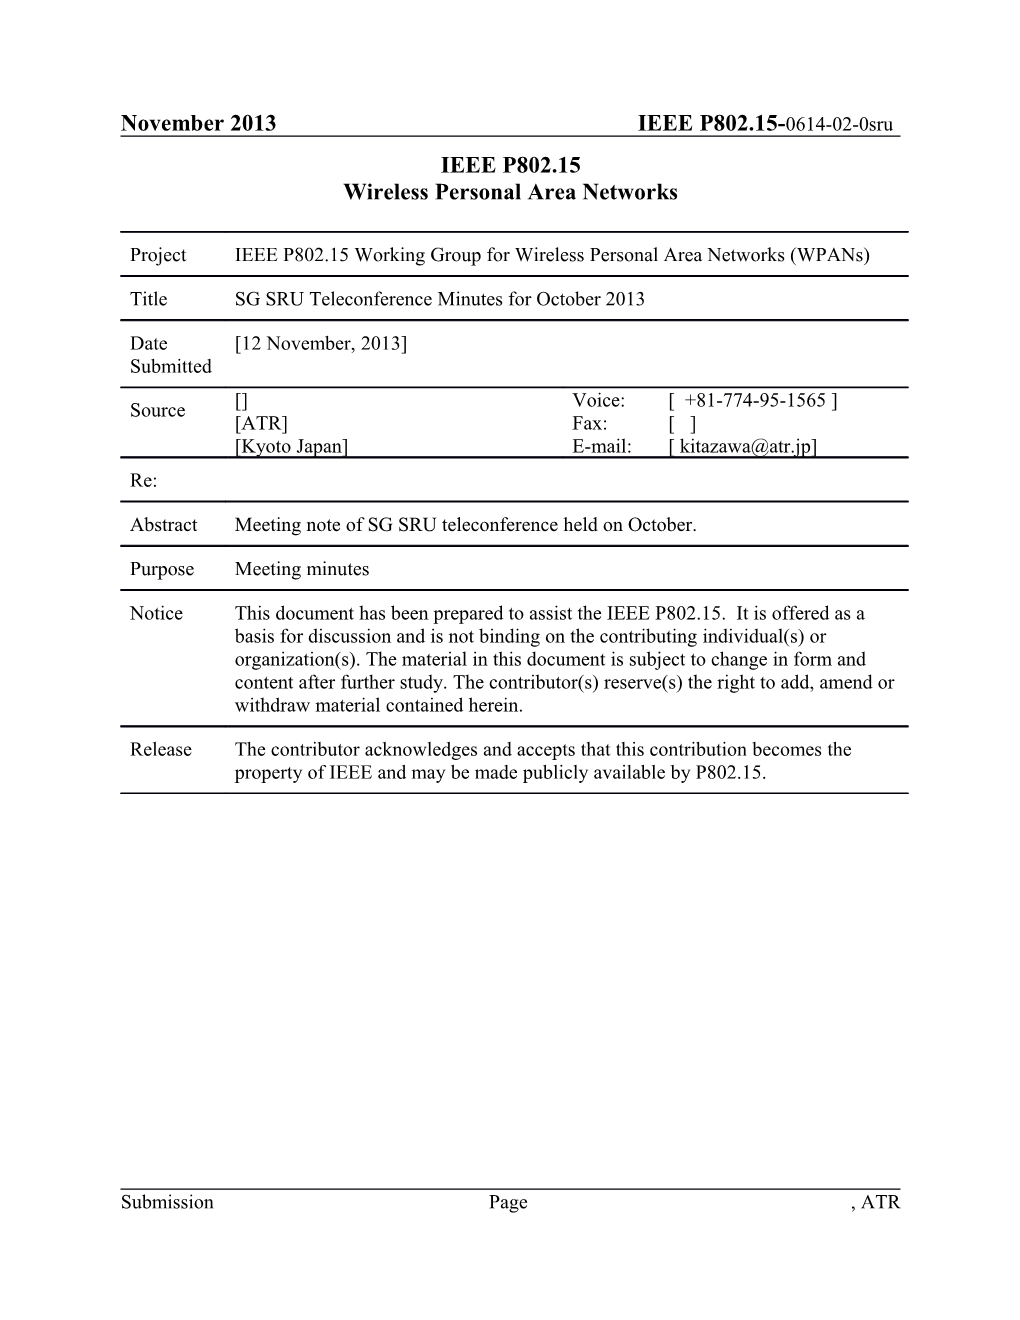 SG SRU Teleconference Minutes for October 2013